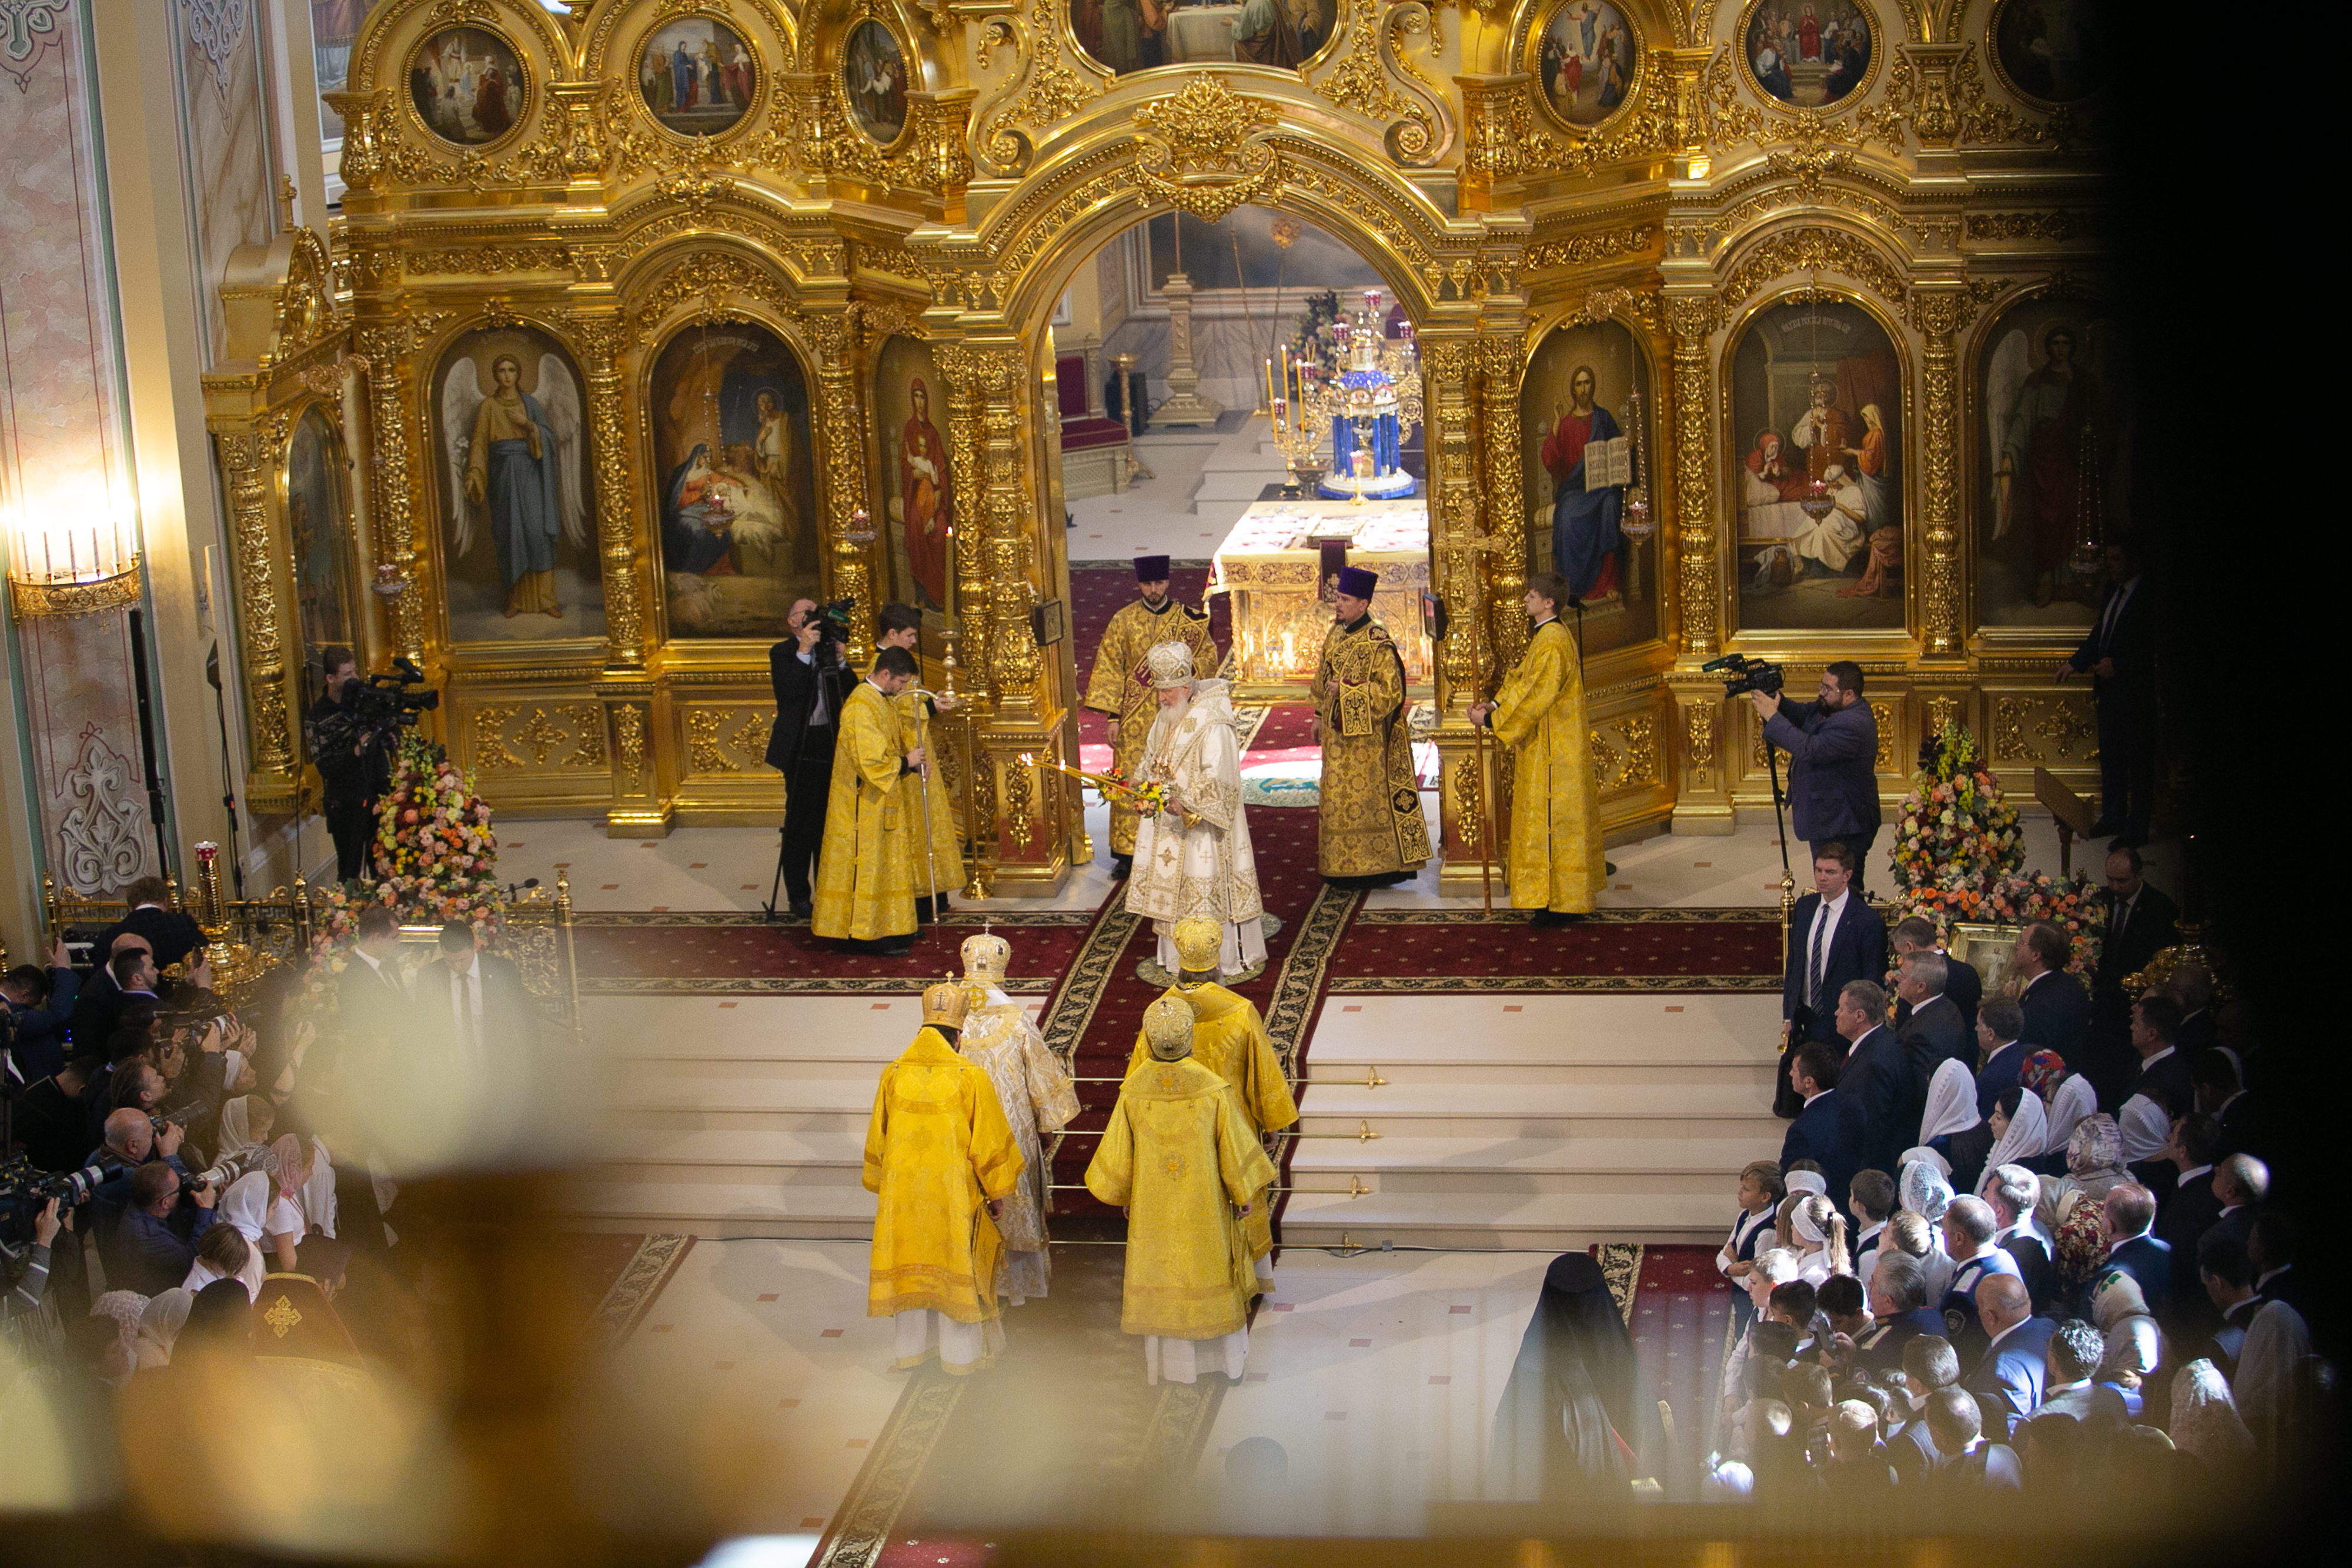 Ростовский храм Рождества Пресвятой Богородицы